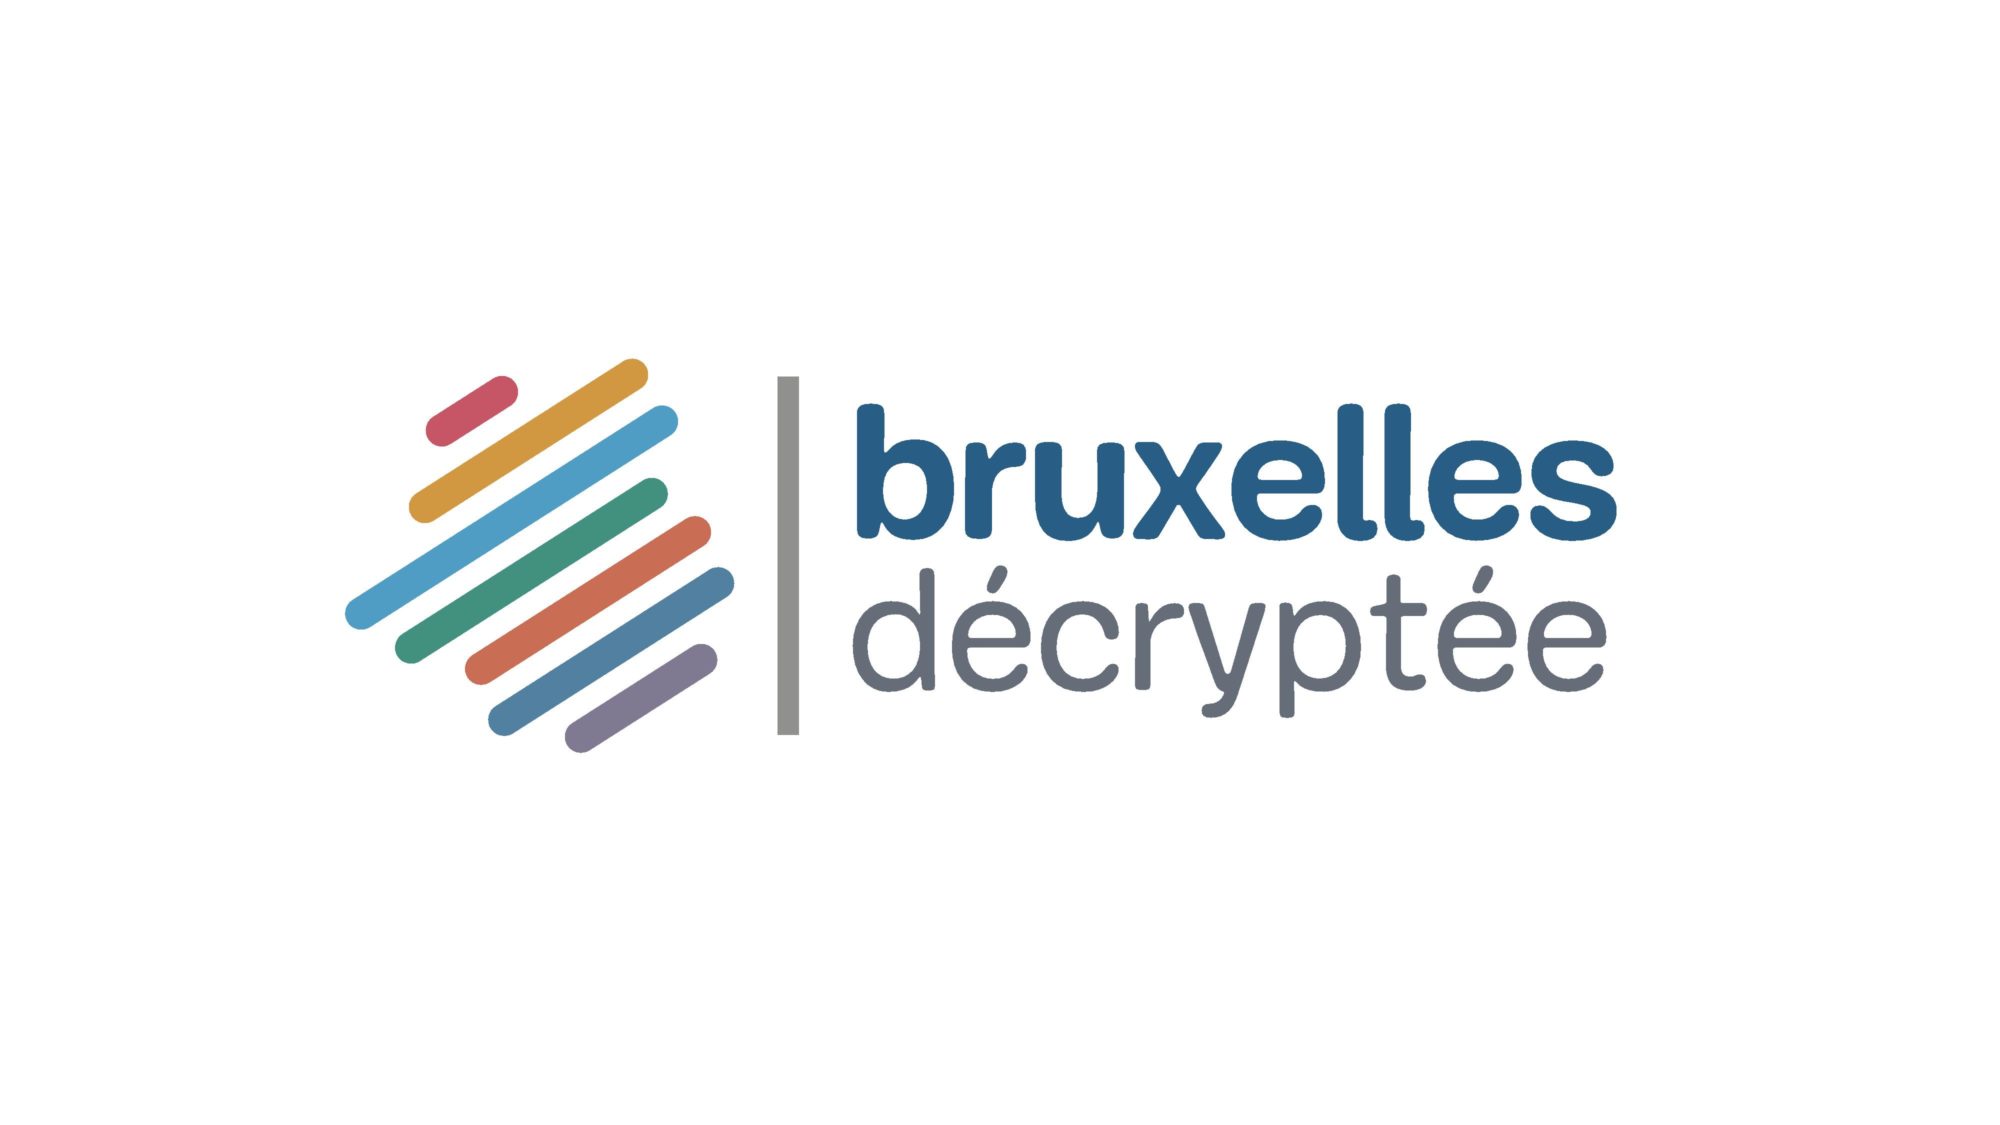 Brx_decryptee_logo